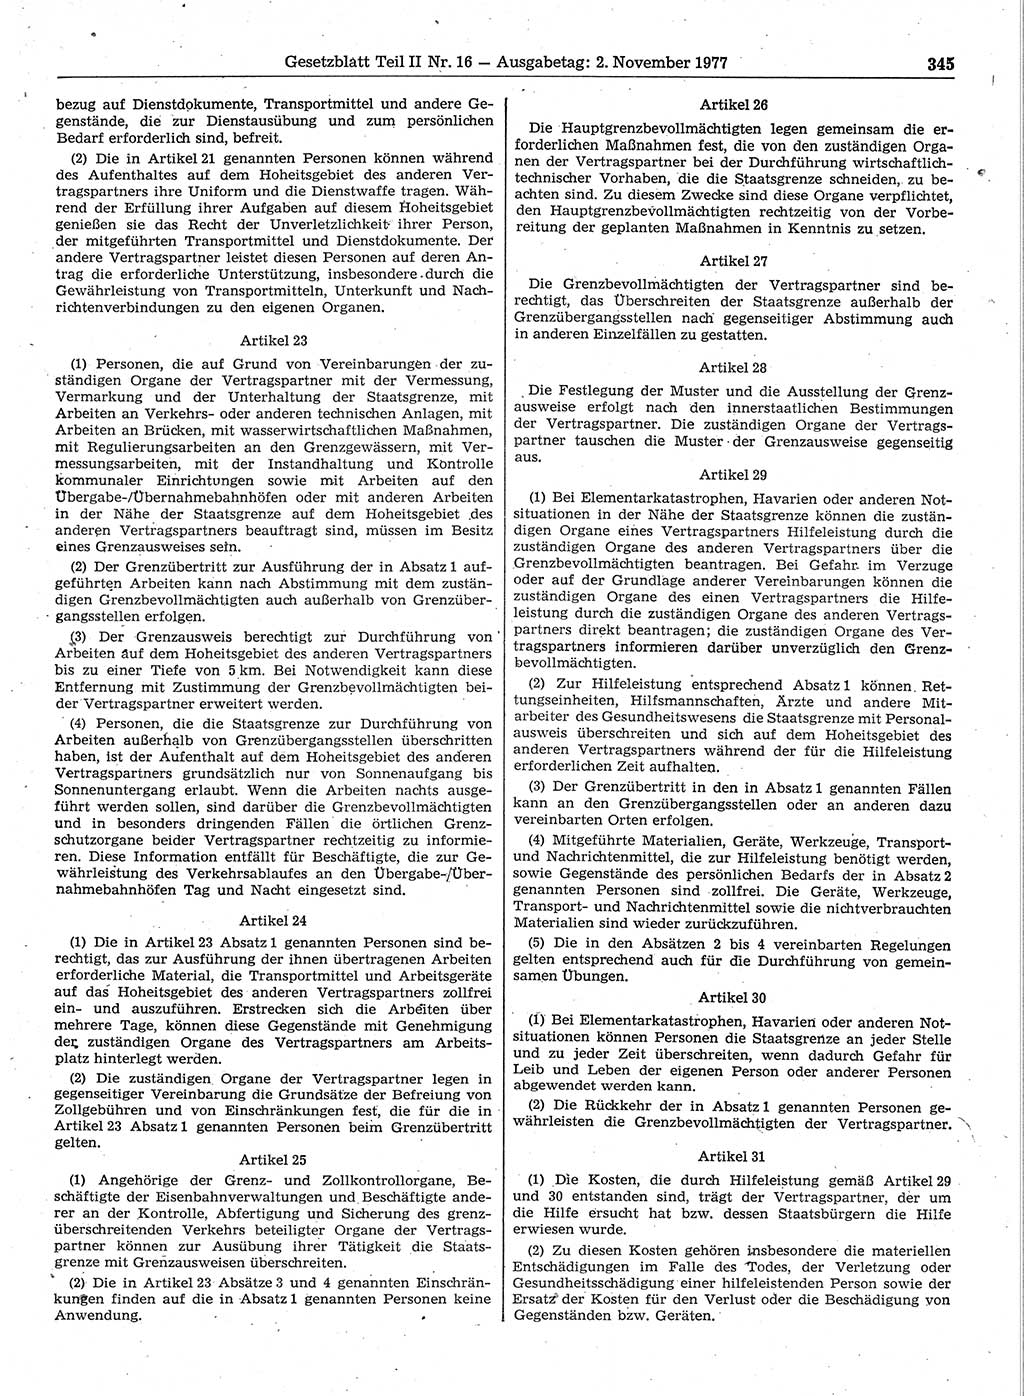 Gesetzblatt (GBl.) der Deutschen Demokratischen Republik (DDR) Teil ⅠⅠ 1977, Seite 345 (GBl. DDR ⅠⅠ 1977, S. 345)